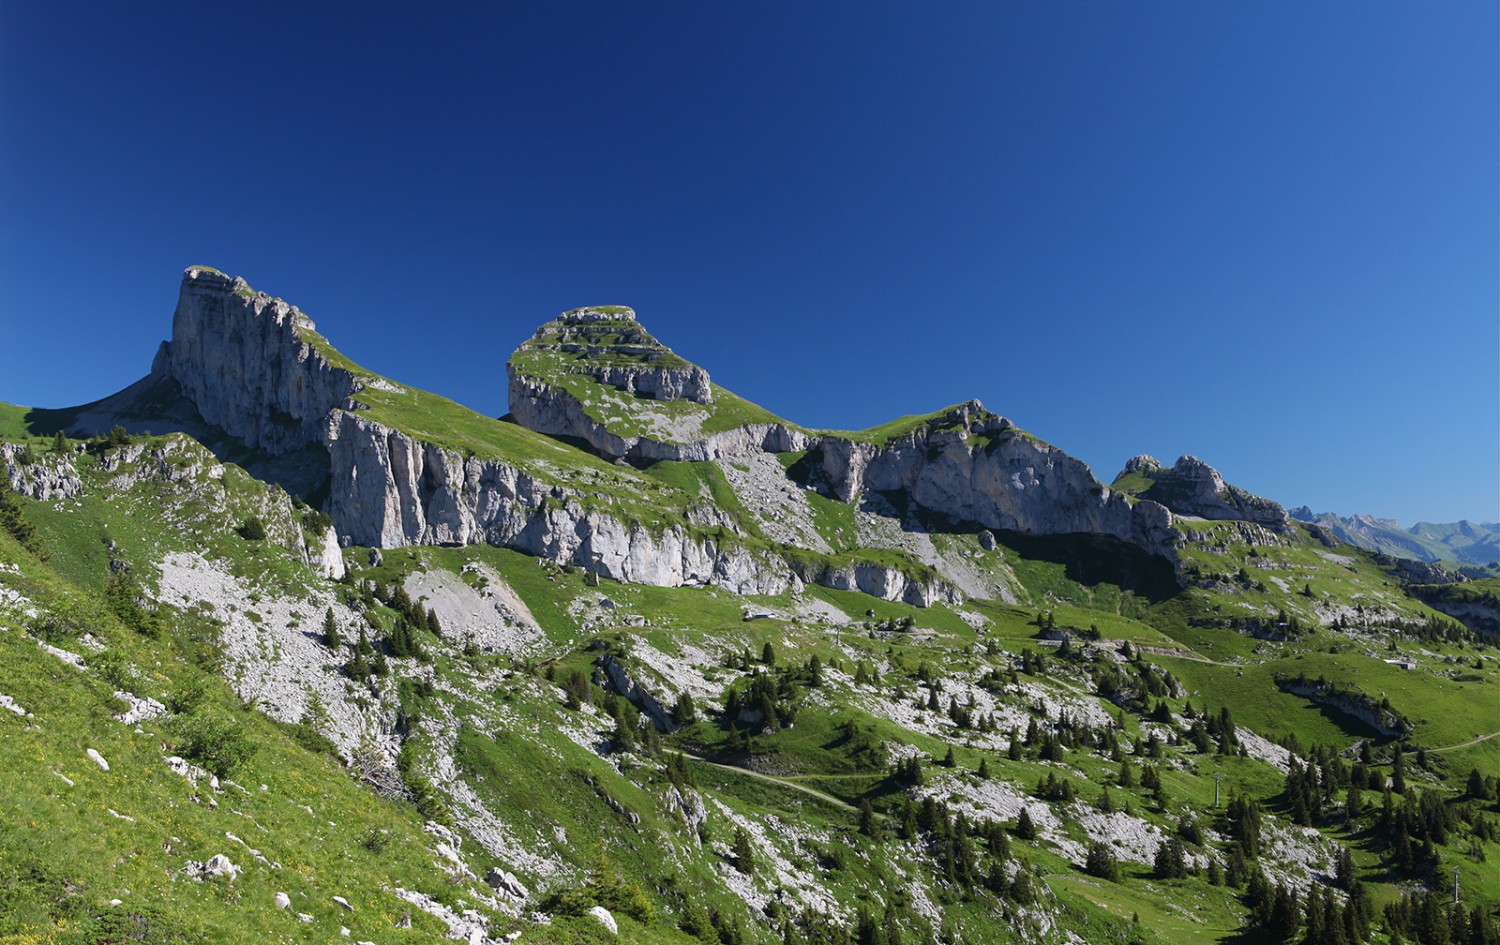 Grandiose Sicht auf die Gipfel Tour d'Aï, Tour de Mayen und Tour de Famelon. Bild: José Crespo